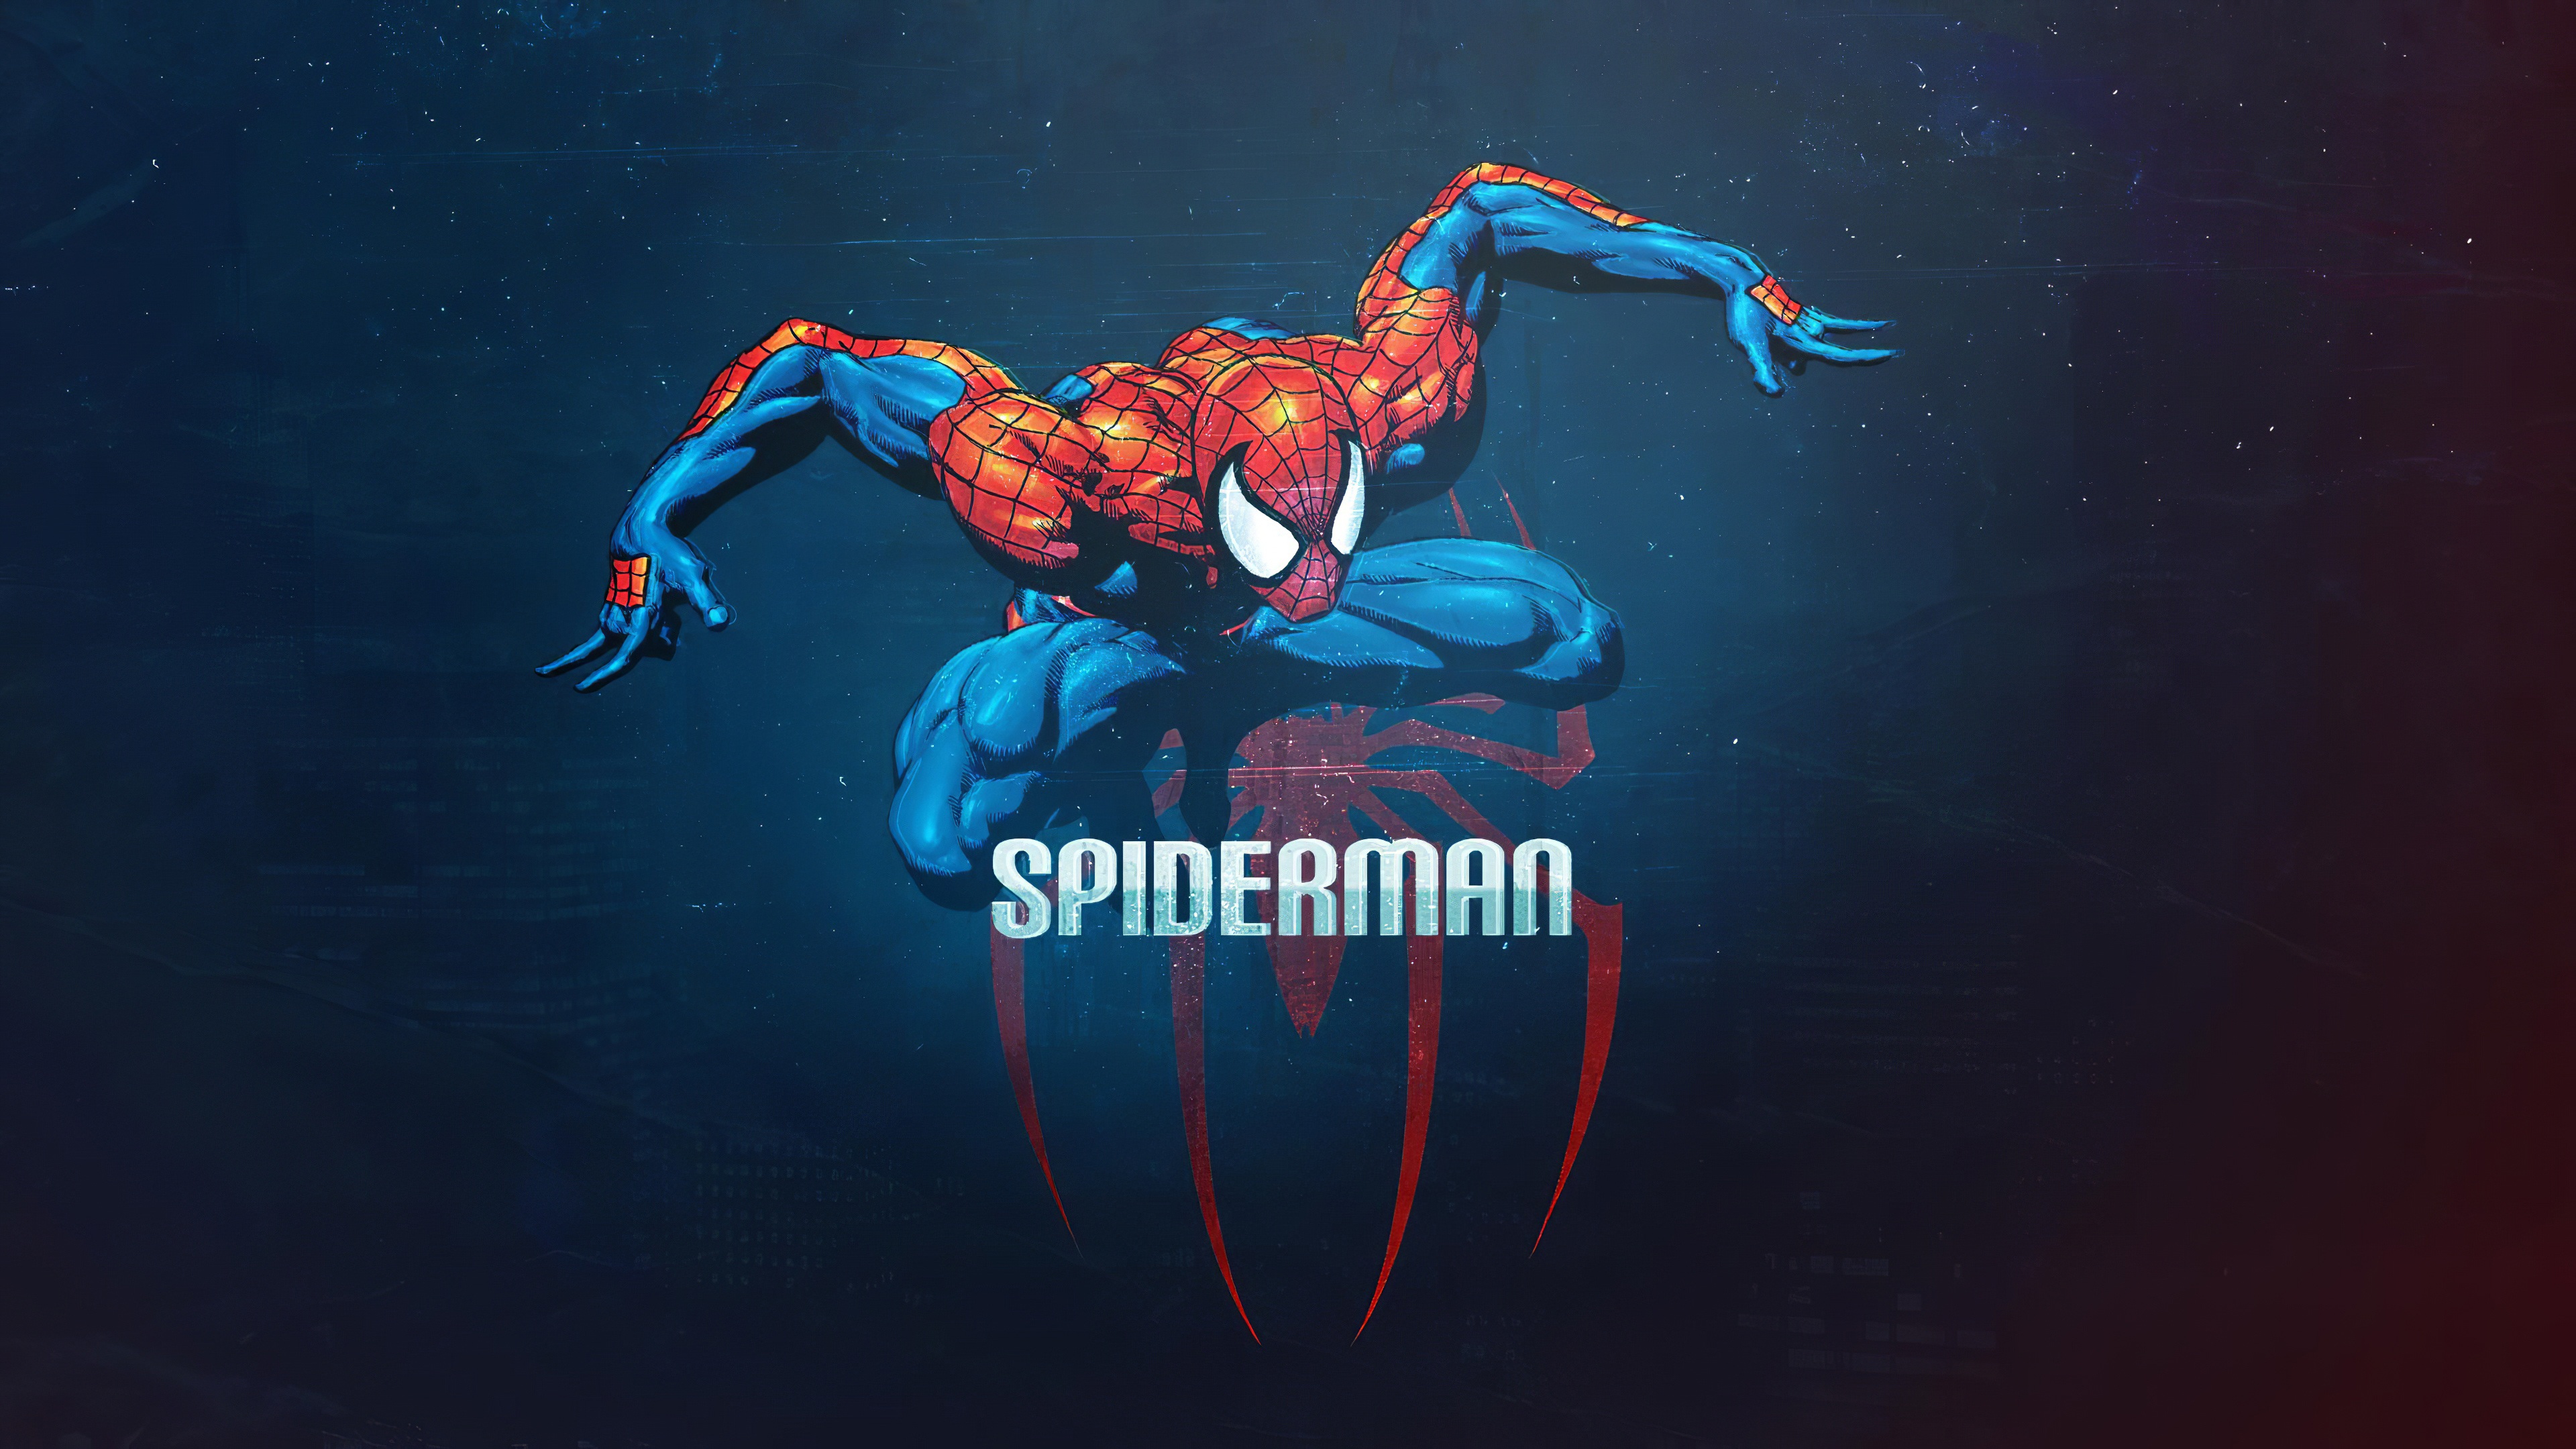 Người nhện: Nếu bạn là fan của siêu anh hùng Spiderman, chắc hẳn sẽ không thể bỏ qua những bức ảnh liên quan đến nhân vật này. Khám phá cuộc phiêu lưu đầy mãn nhãn và hấp dẫn của người nhện qua những bức ảnh độc đáo và sáng tạo.